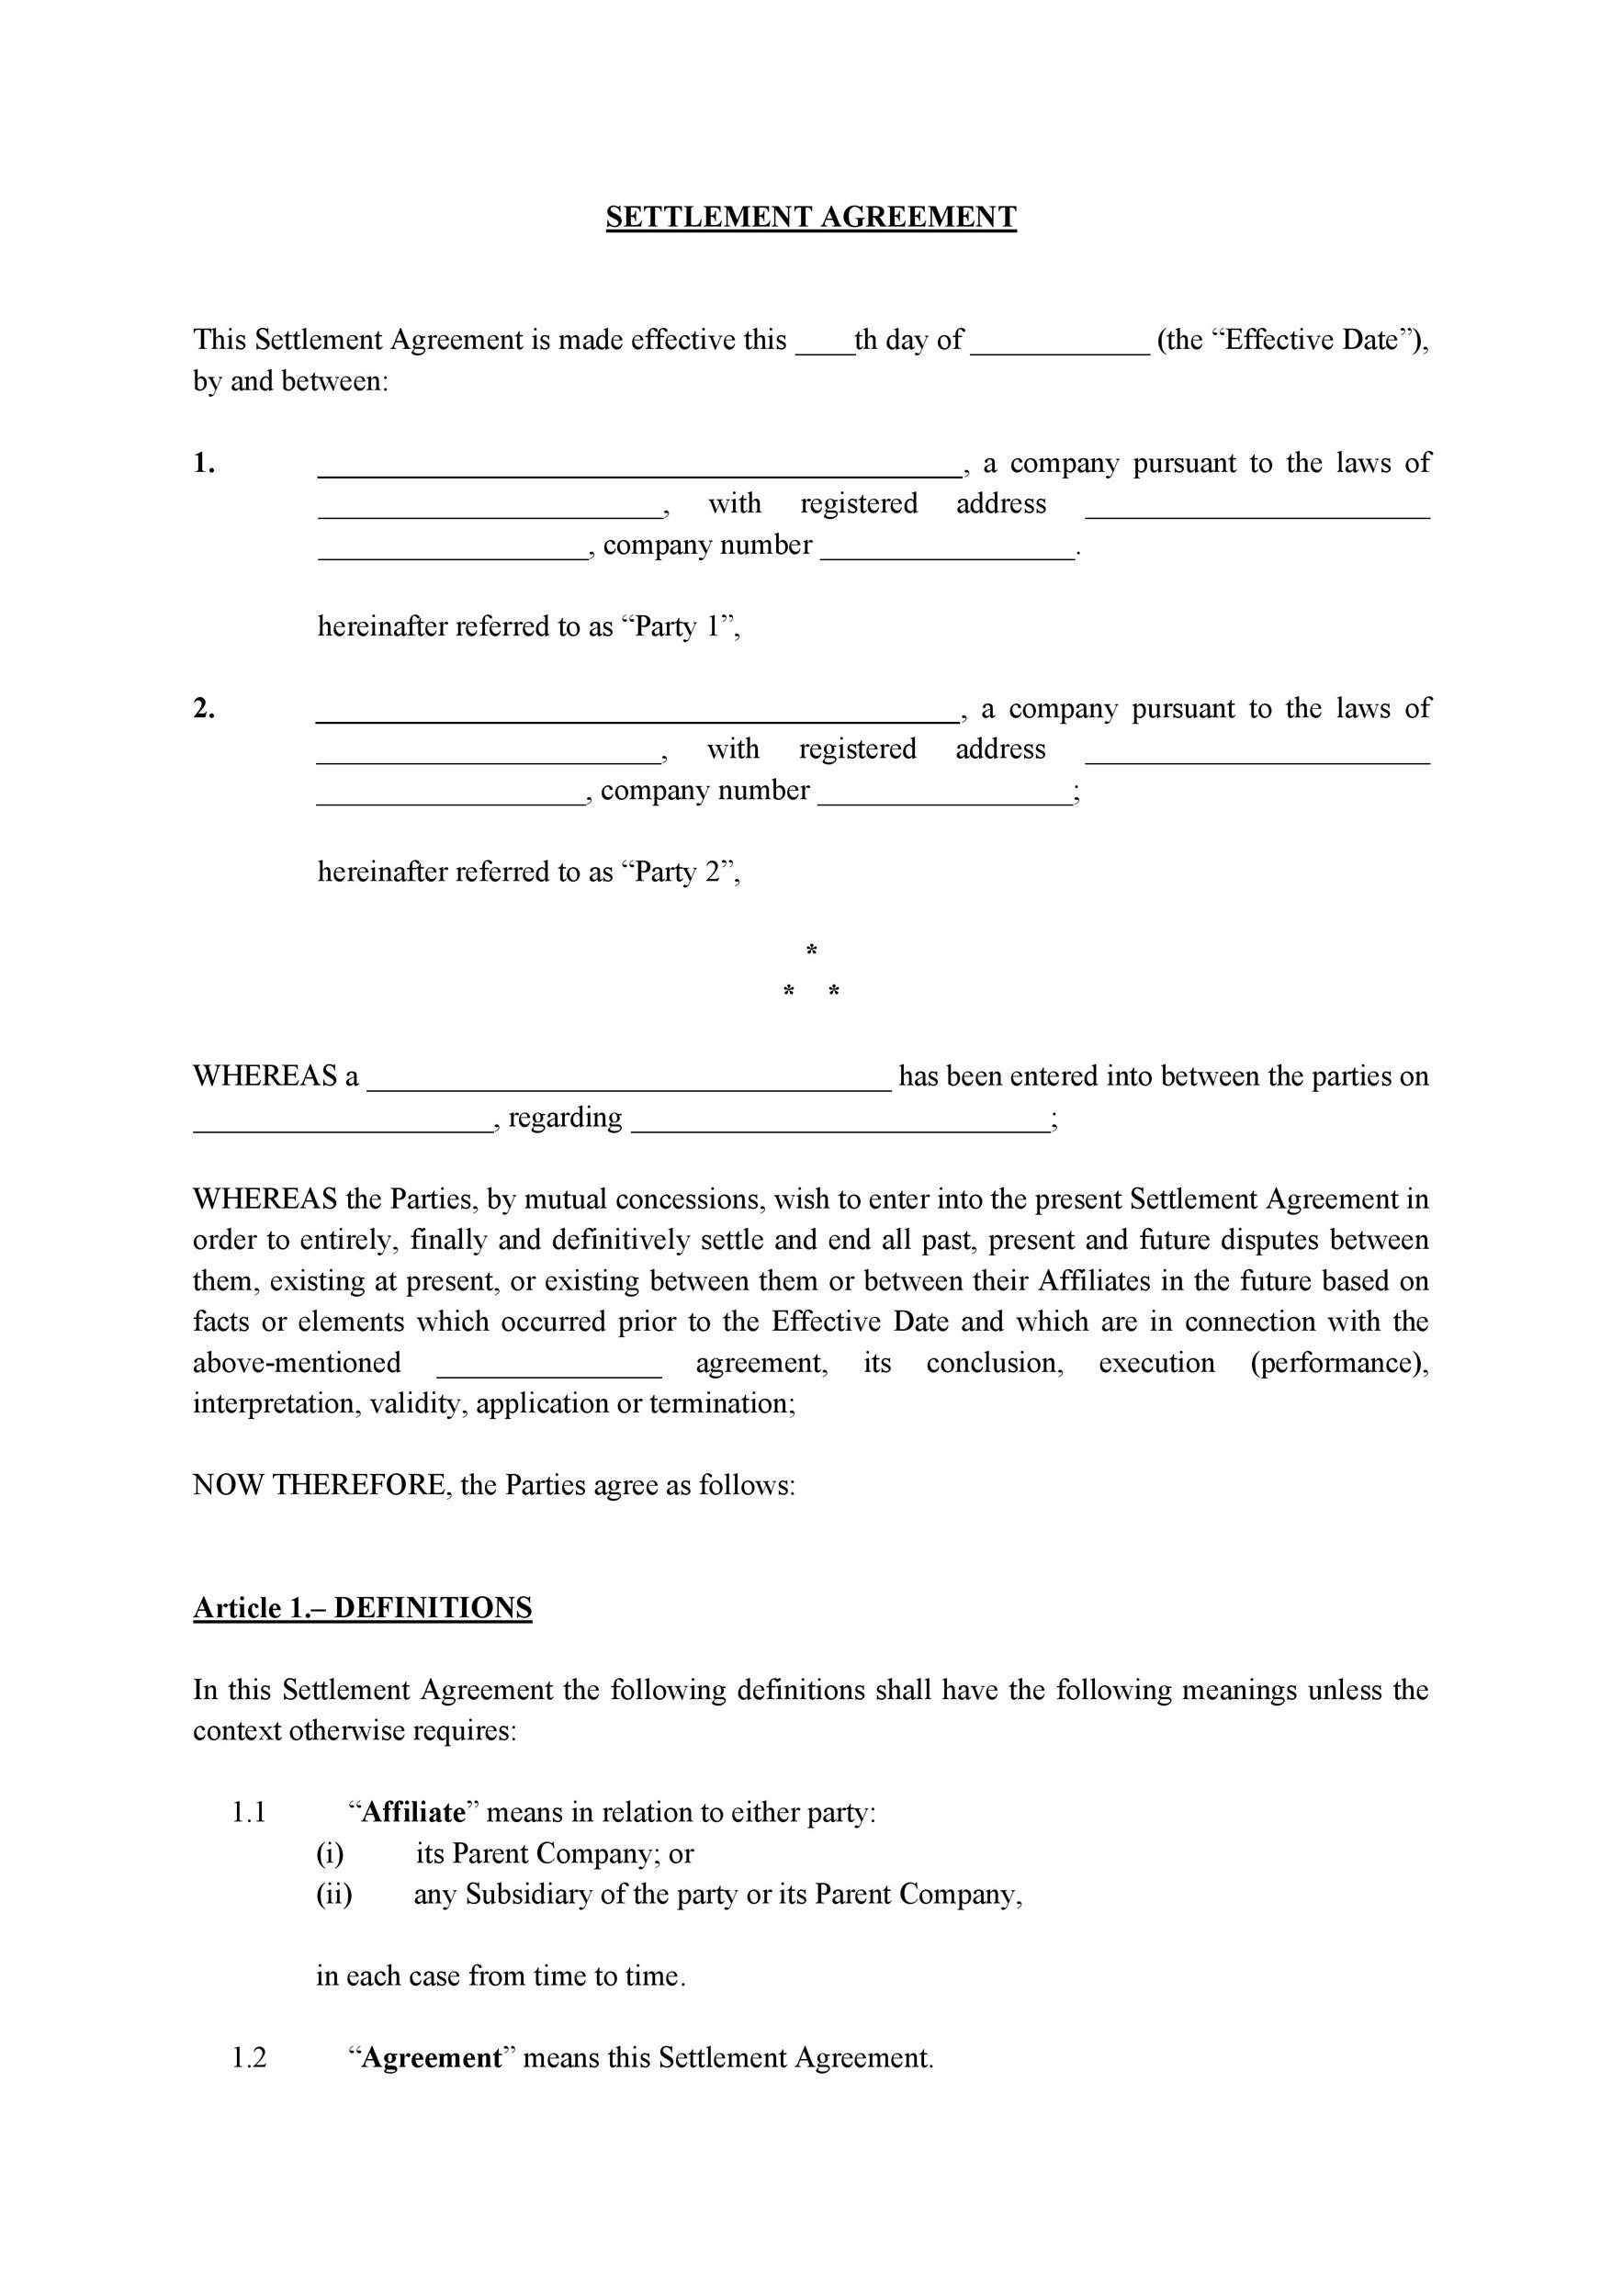 Sample Settlement Agreement Letter from templatelab.com